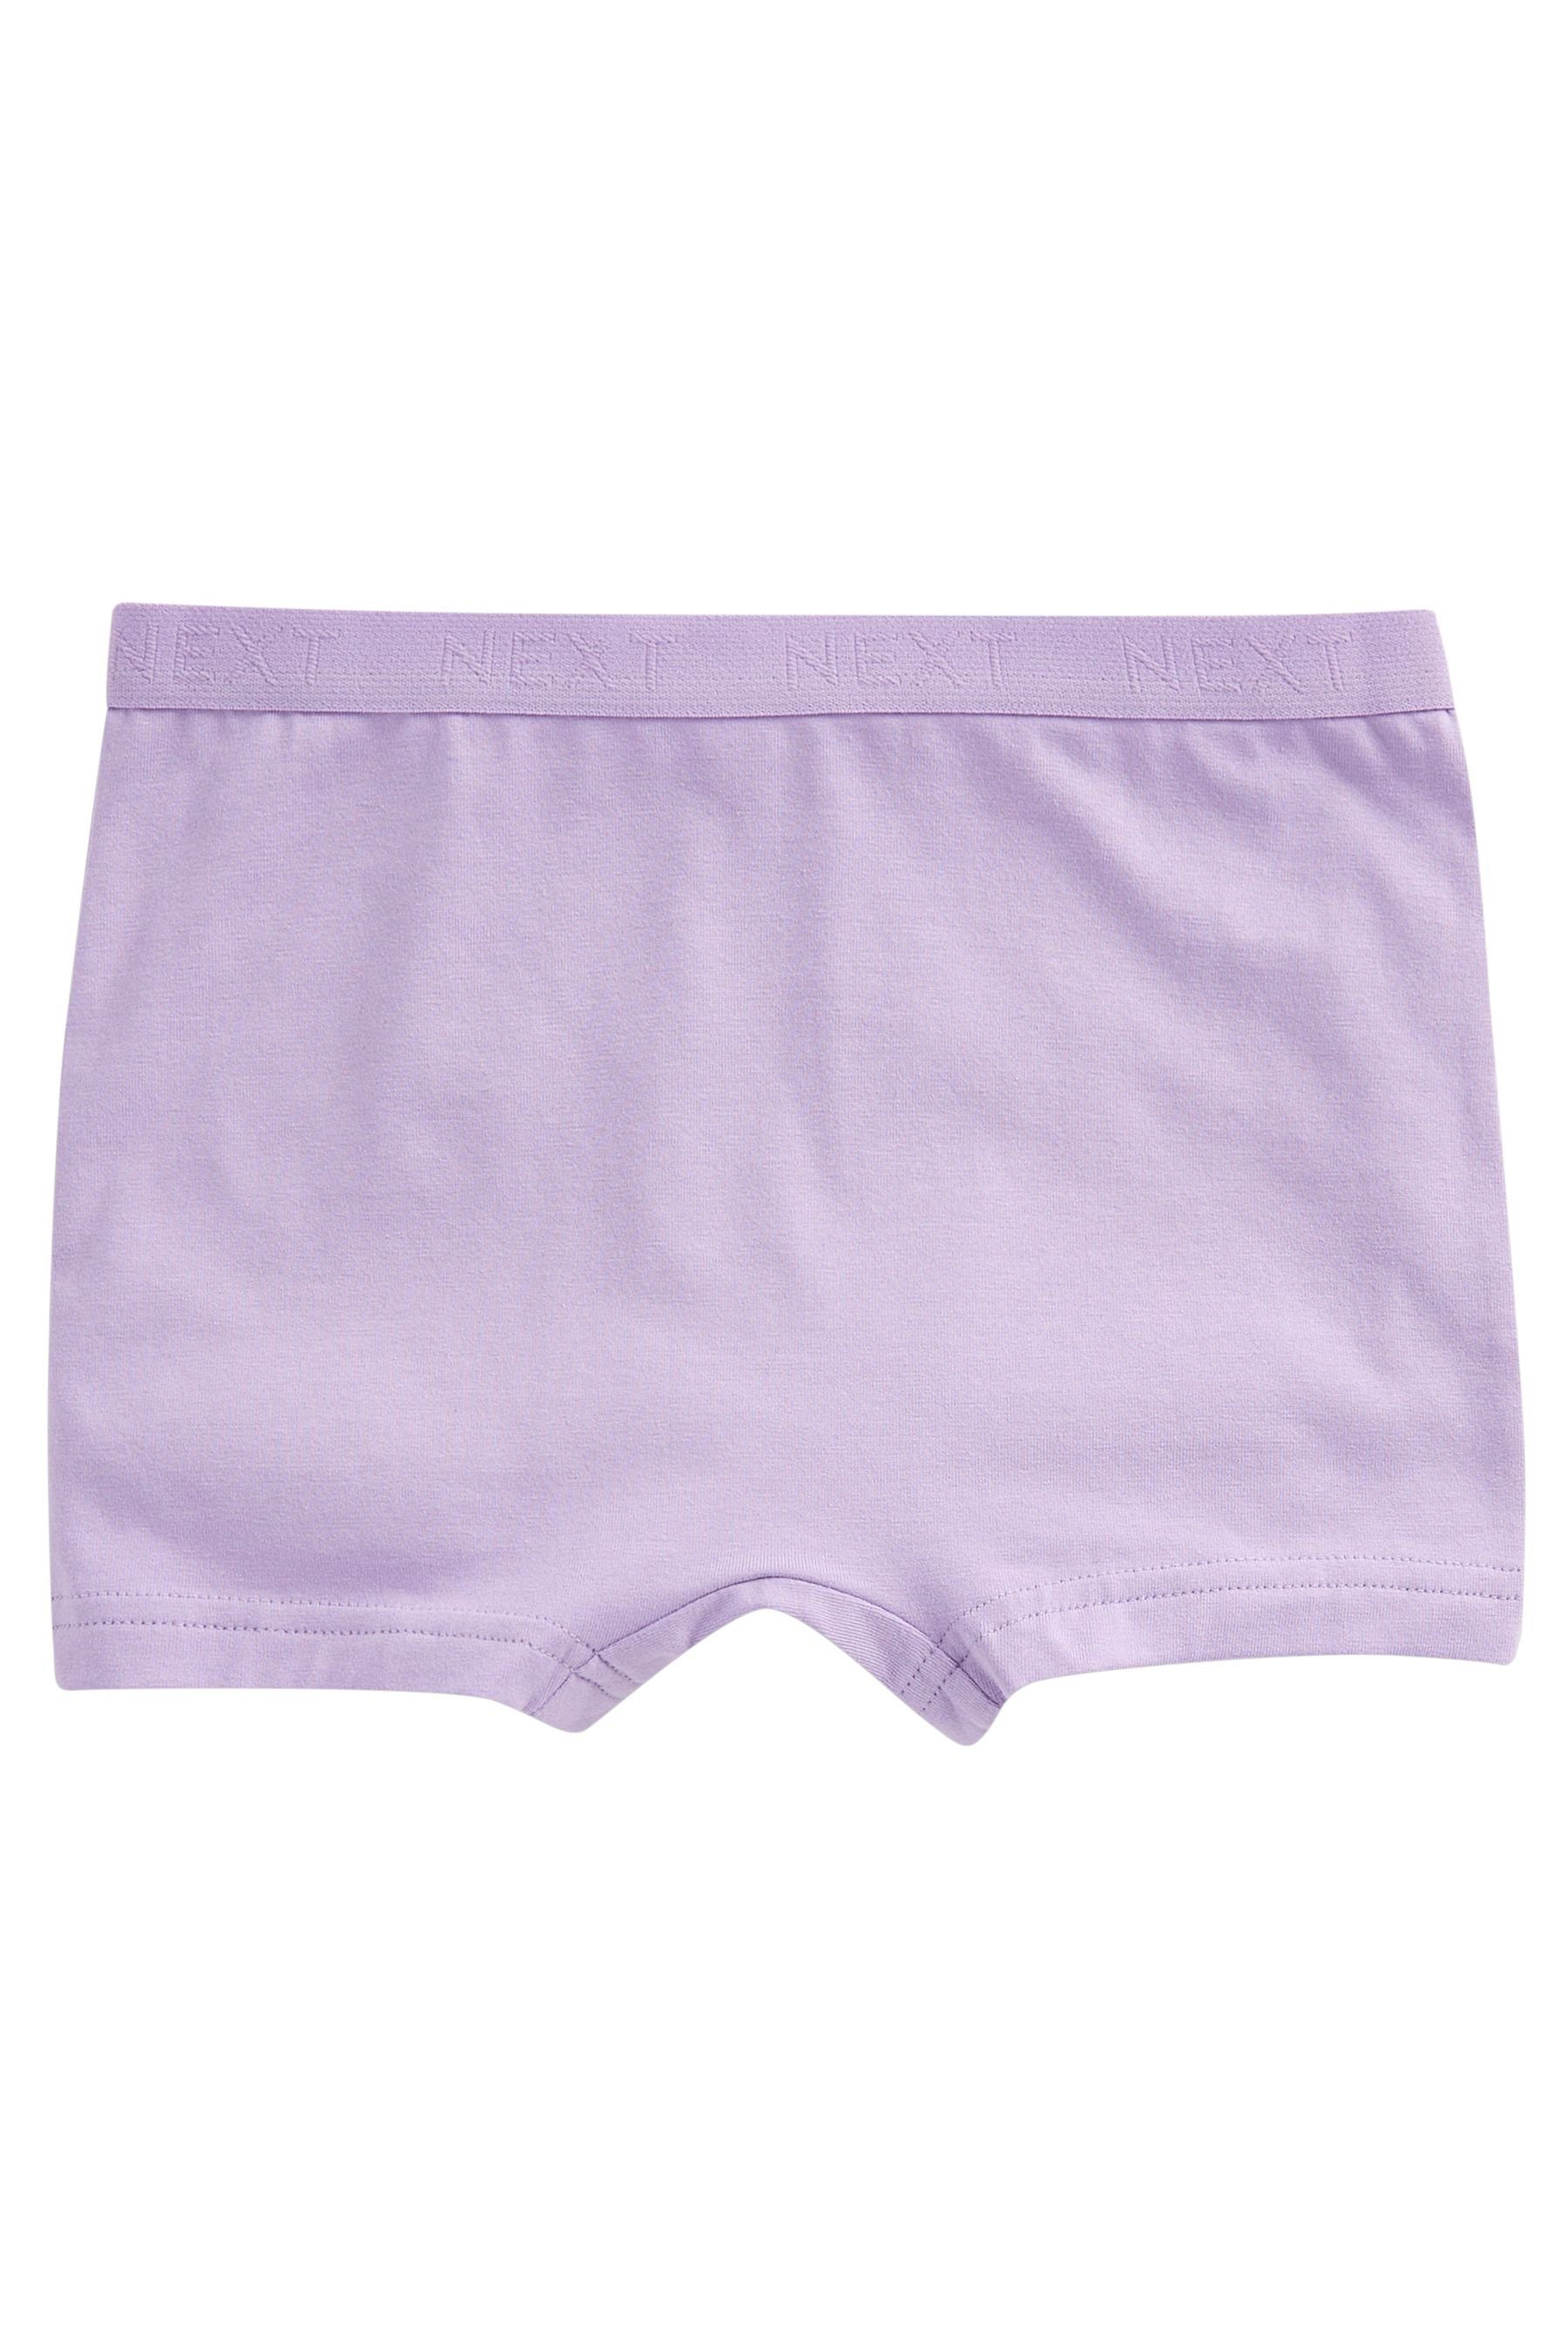 Next Schlüpfer Shorts mit Pink/Purple Blümchenmuster, 5er-Pack (5-St)